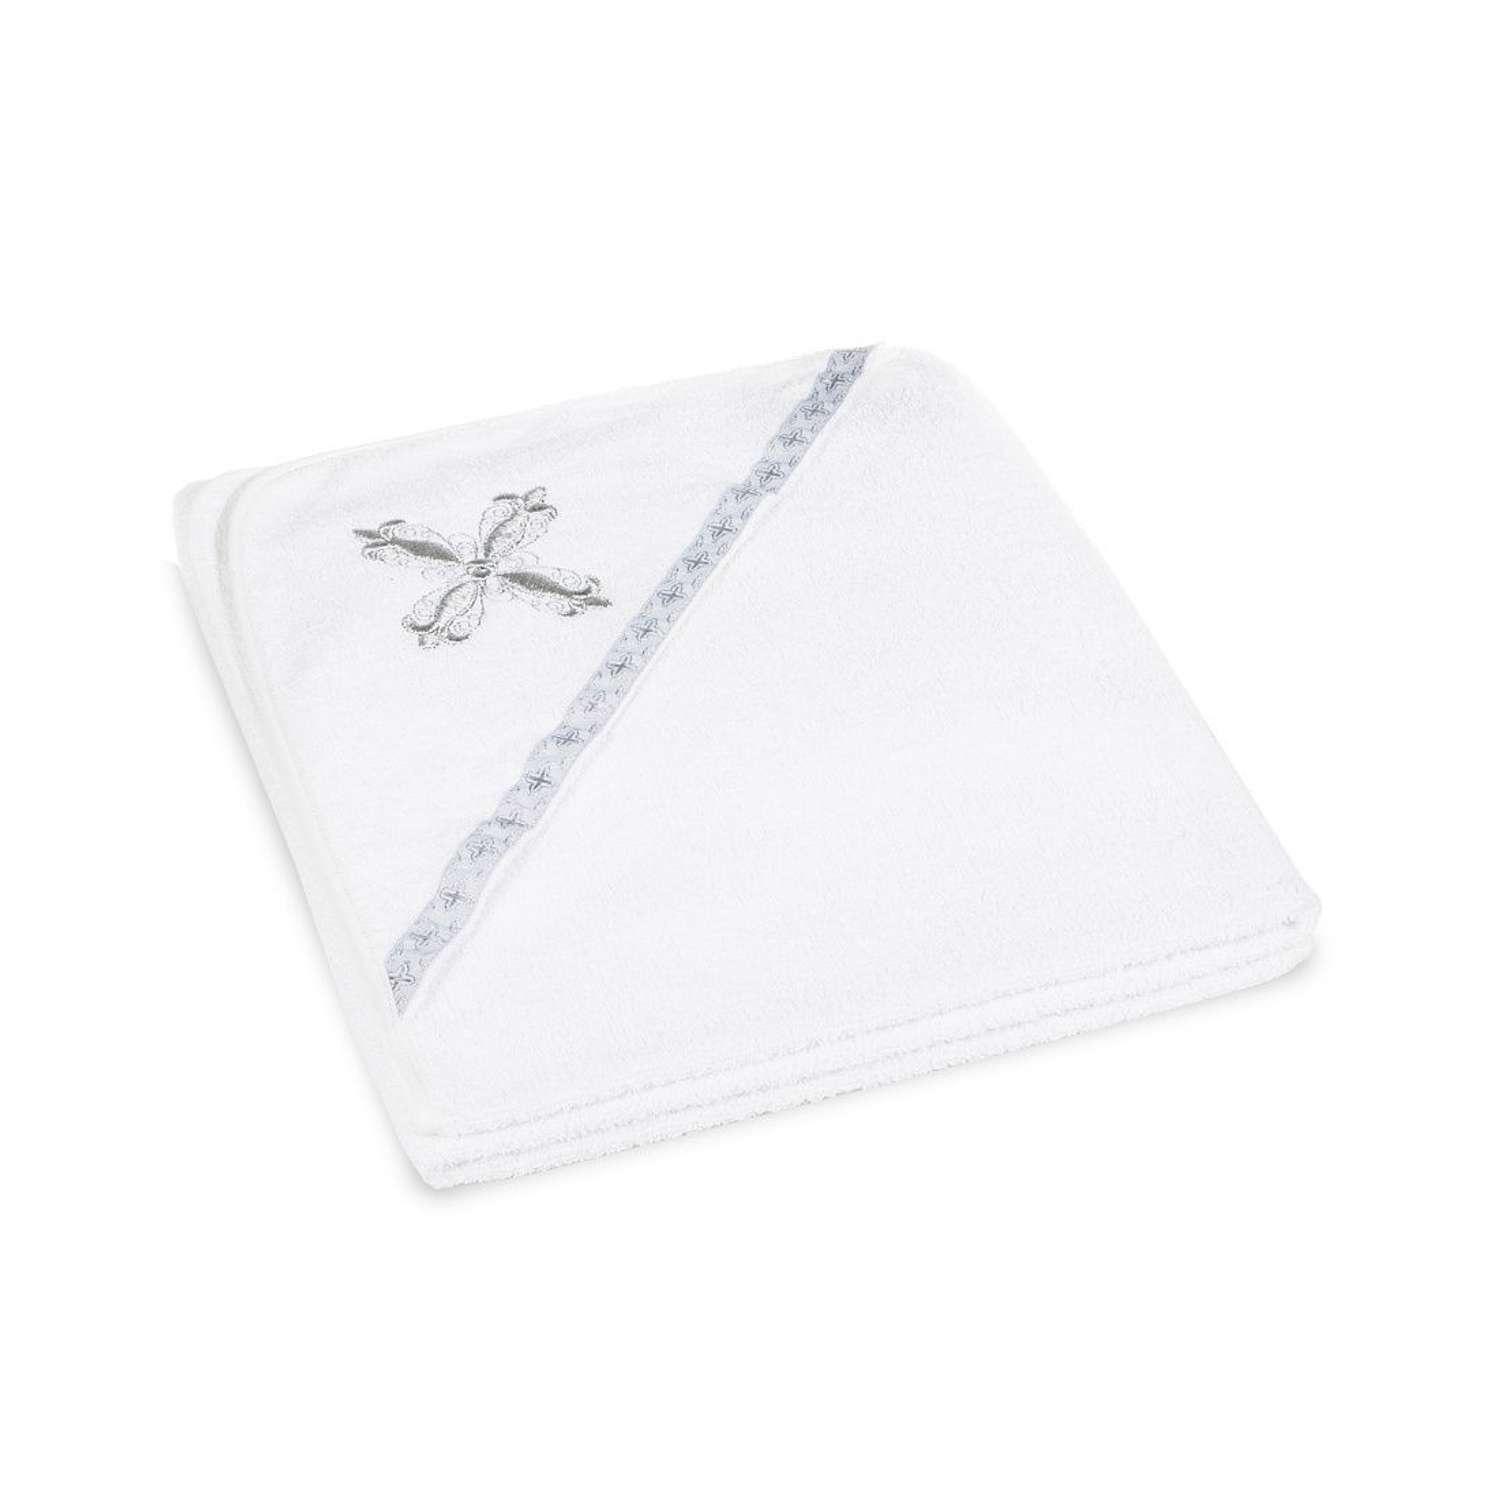 Полотенце для крещения Святополье 100х75 см с вышивкой крест Серебристый - фото 1